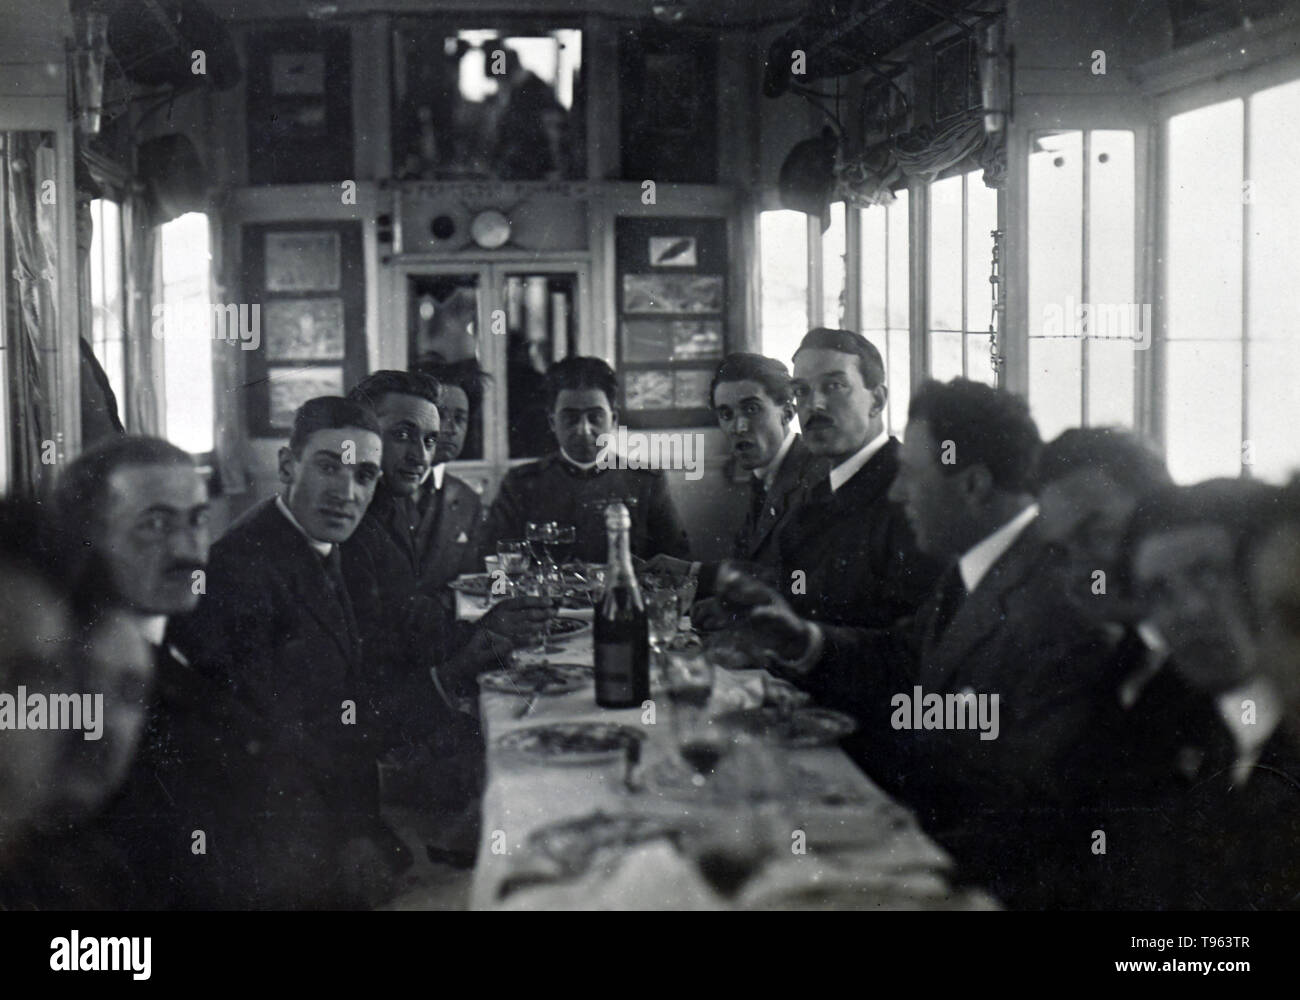 Hommes assis autour d'une table dans une gondole du dirigeable. Fedele Azari (Italien, 1895 - 1930) ; Italie ; 1914 - 1929 ; argentique. Banque D'Images